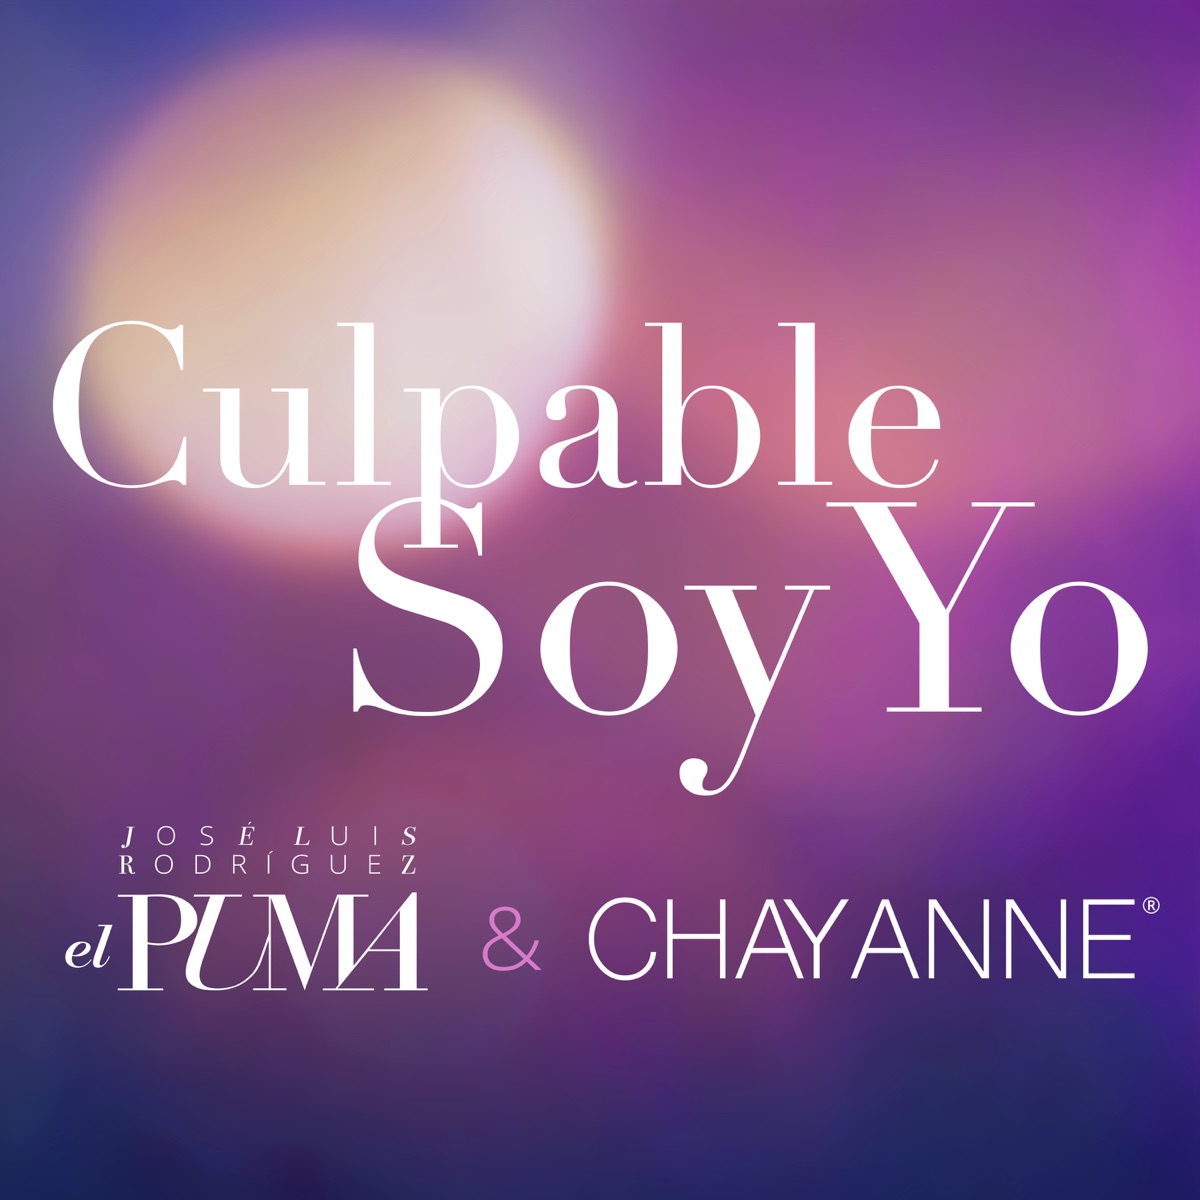 Culpable Soy Yo - Single” álbum de José Luis Rodríguez & Chayanne en Apple  Music